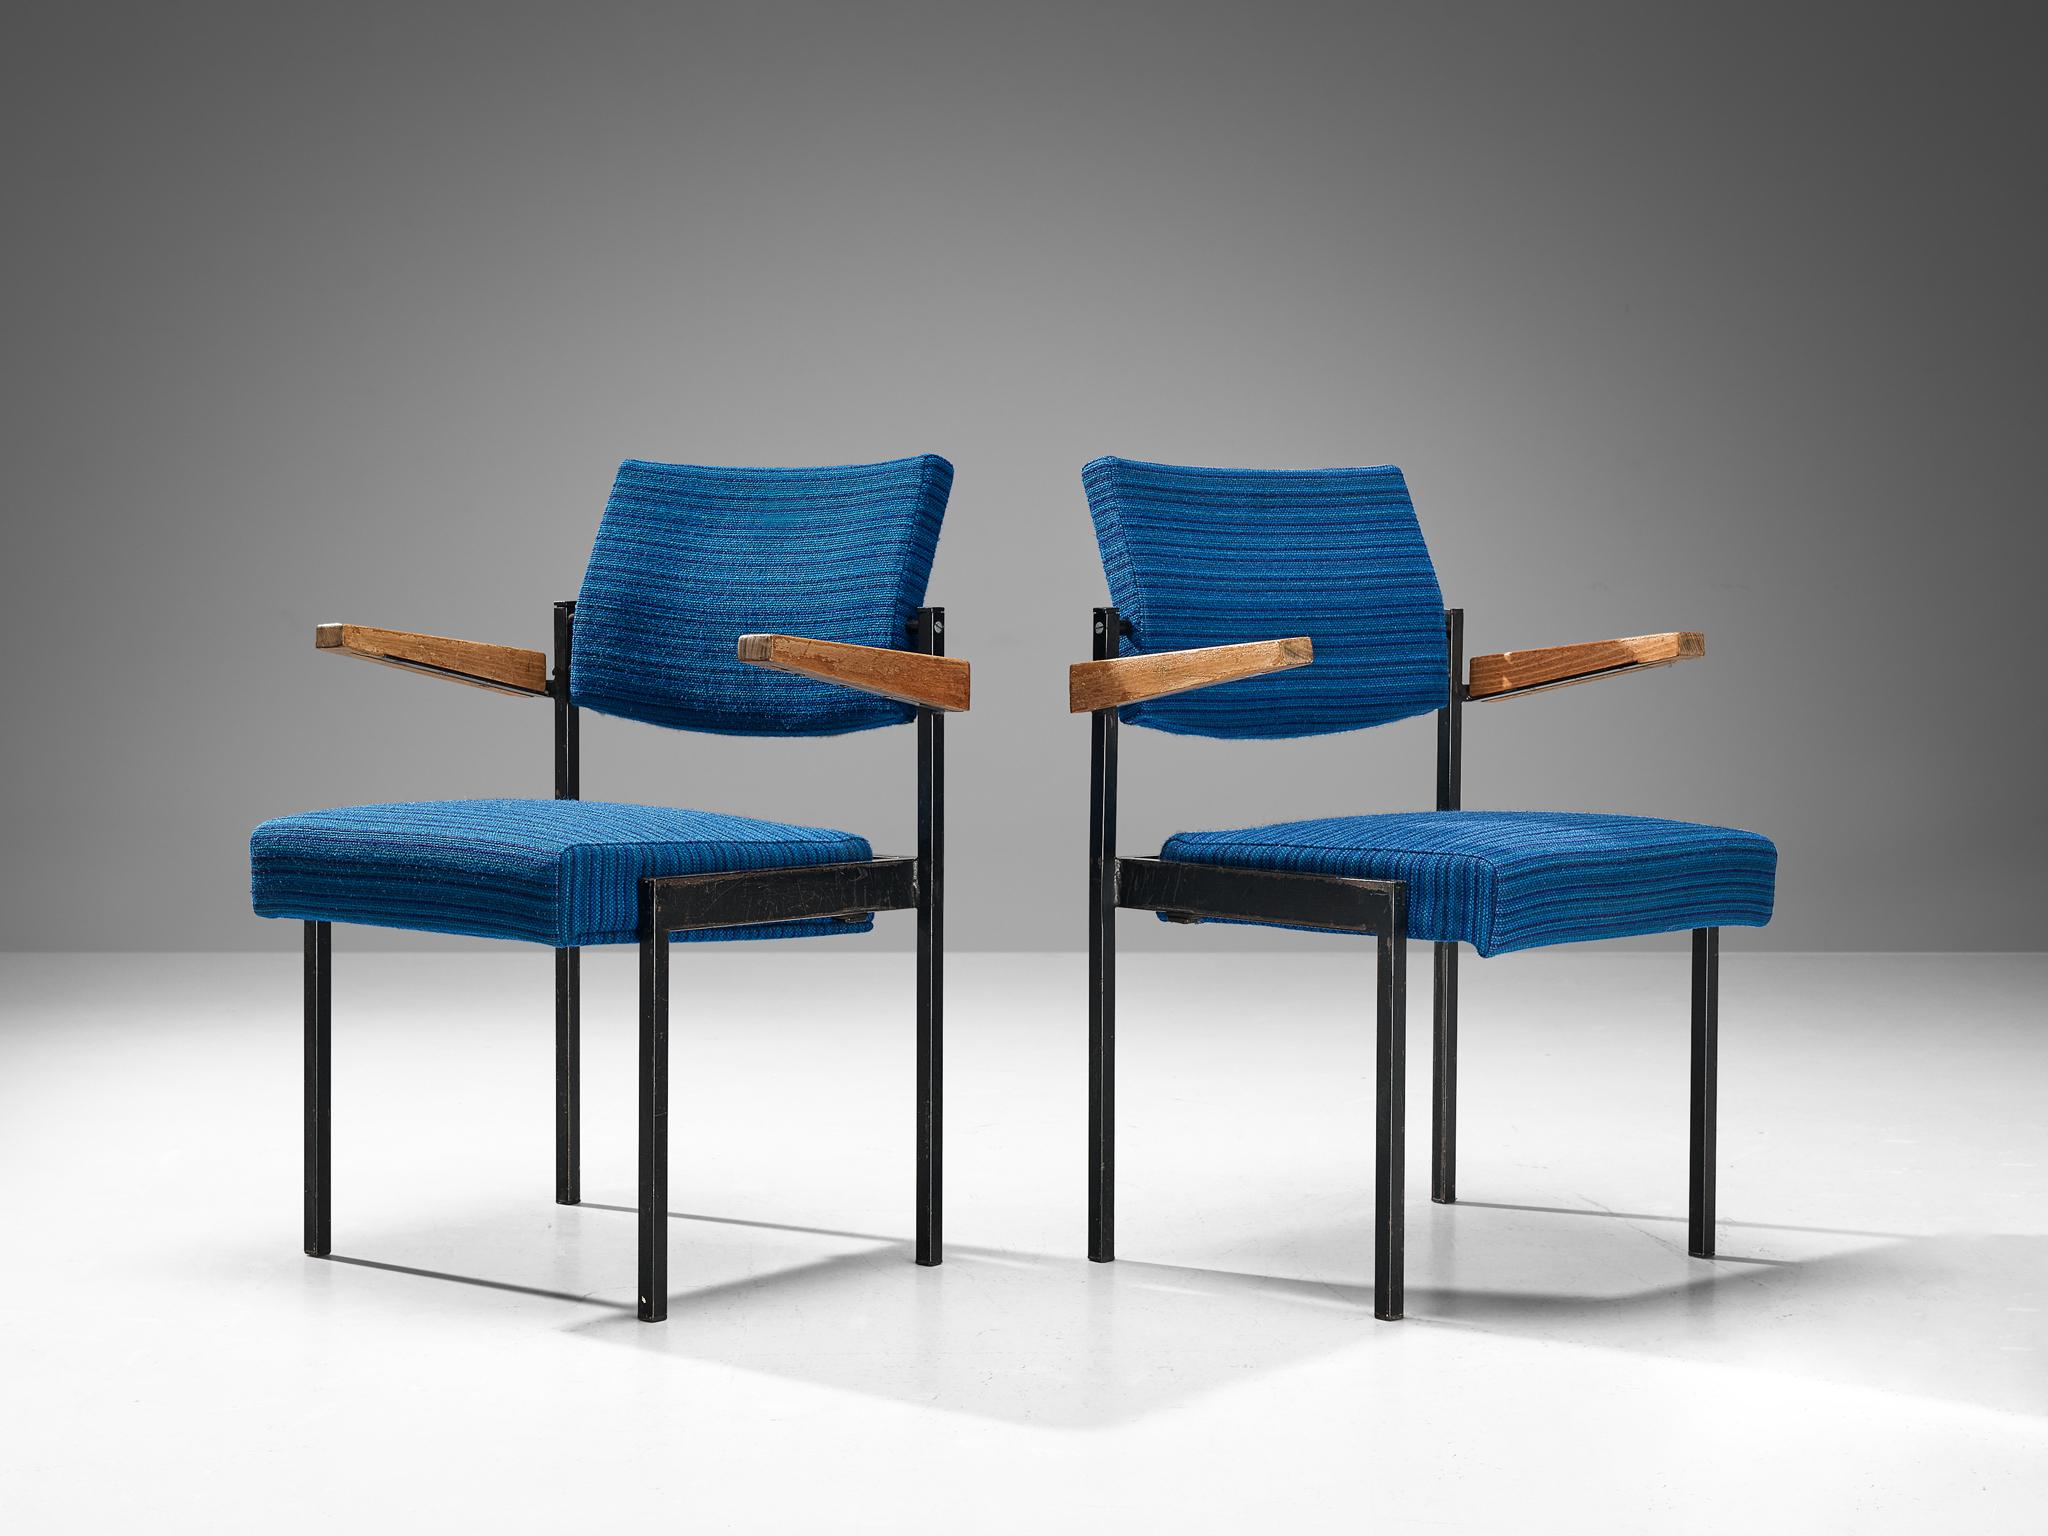 Paar Sessel, lackiertes Metall, Stoff, Buche, Niederlande, 1960er Jahre.

Dieses Set niederländischer Stühle aus der Mitte des Jahrhunderts ist stapelbar und daher leicht zu verstauen. Ein weiteres funktionelles Merkmal ist die Möglichkeit, die